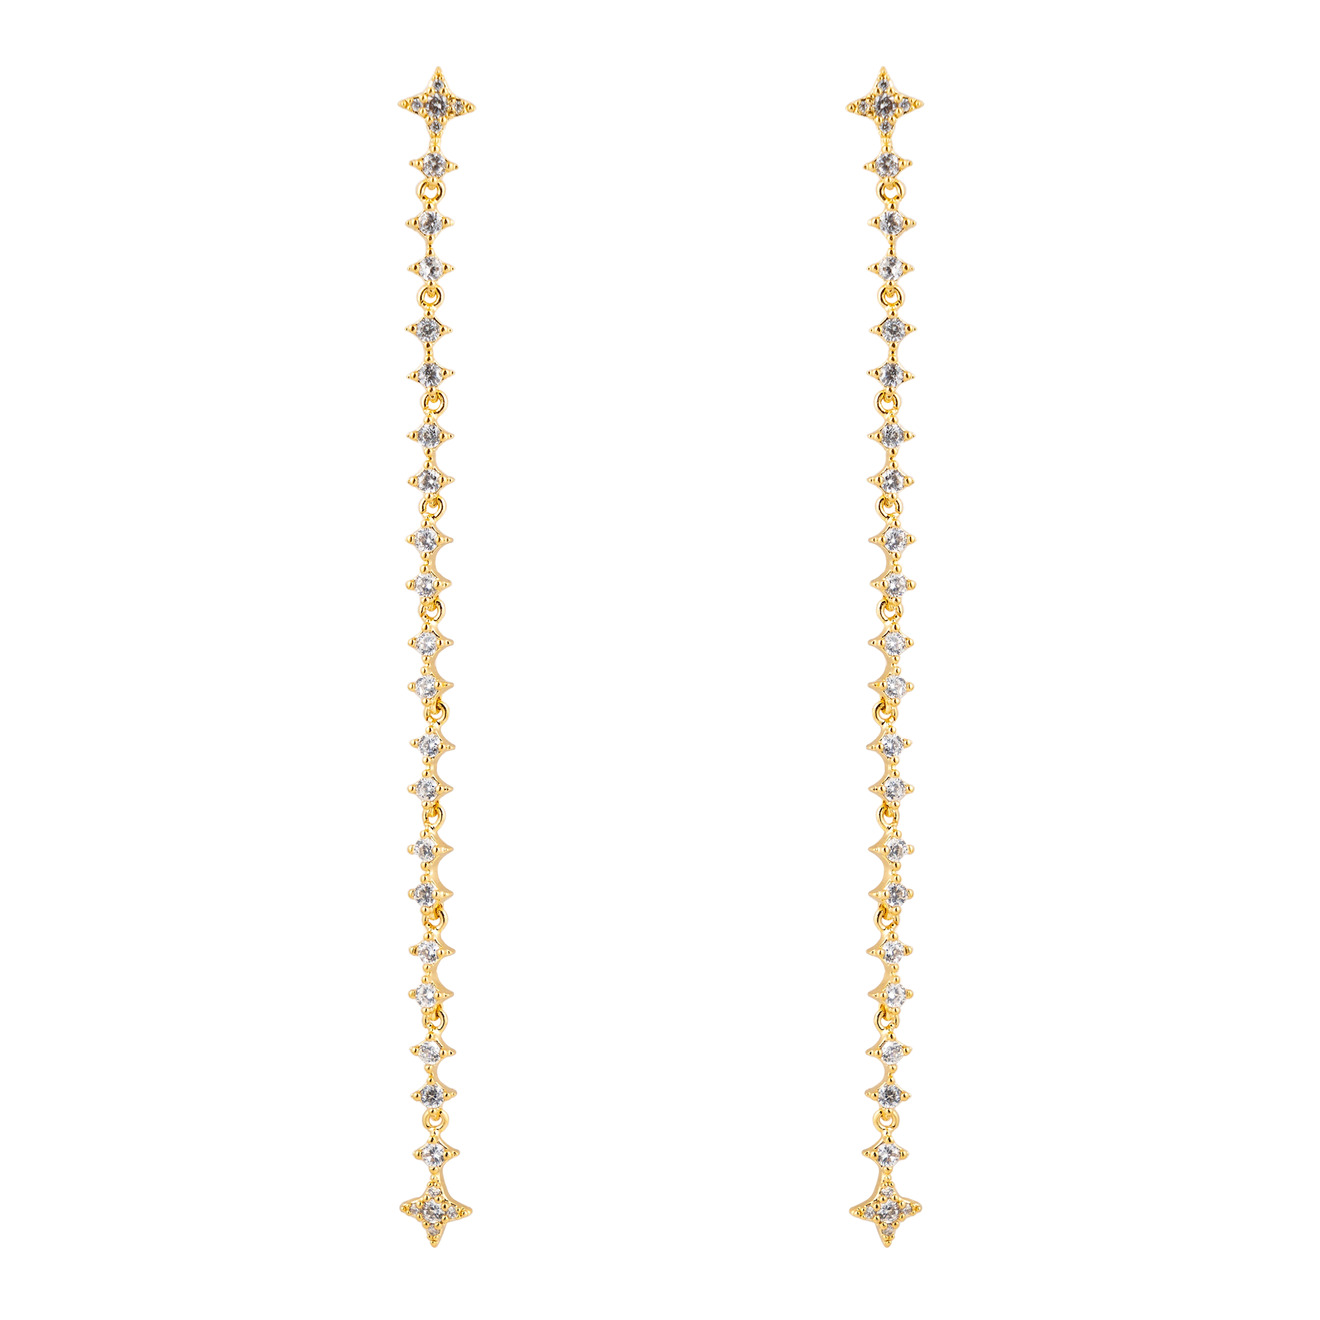 Free Form Jewelry Золотистые длинные серьги с кристаллами-звездами free form jewelry золотистые длинные серьги с кристаллами